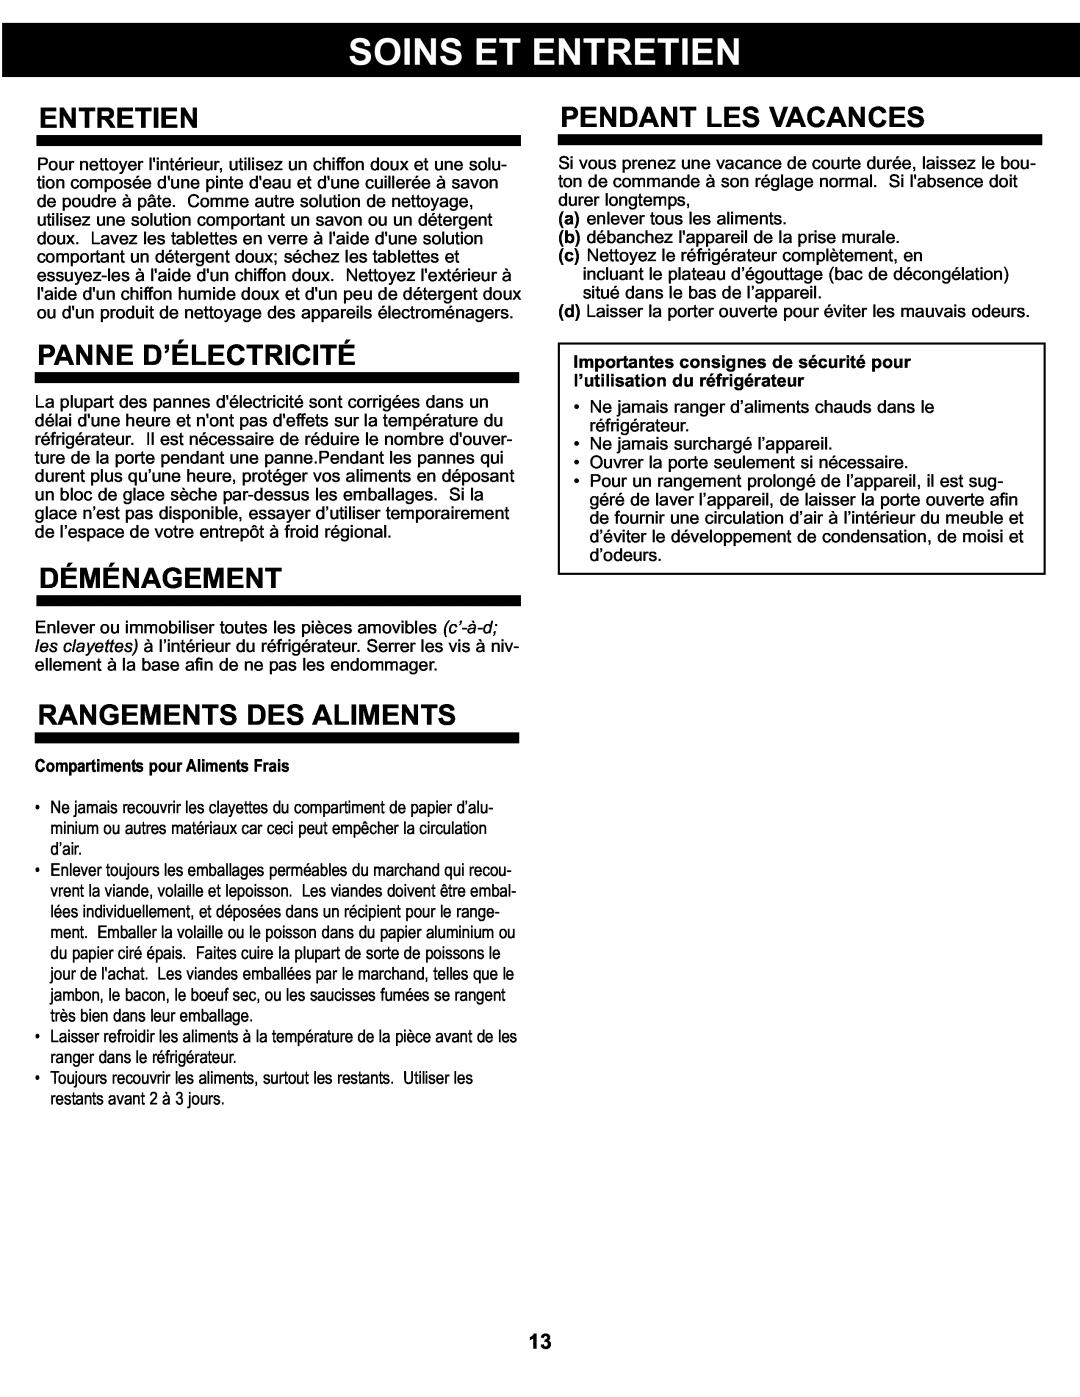 Sunbeam SBCR122BSL manual Entretien, Pendant Les Vacances, Panne D’Électricité, Déménagement, Rangements Des Aliments 